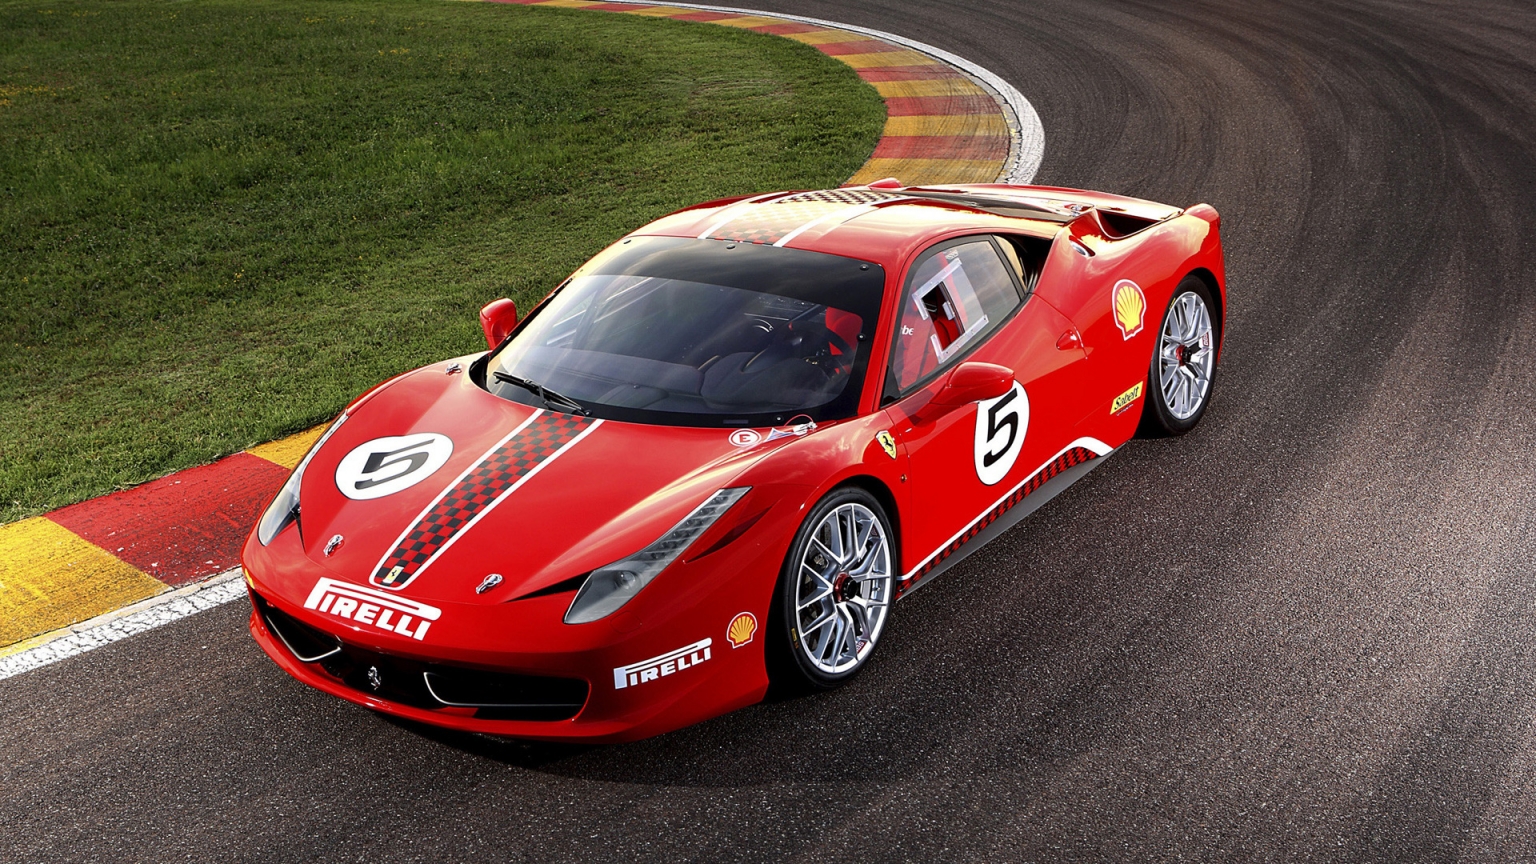 Ferrari 458 Challenge for 1536 x 864 HDTV resolution